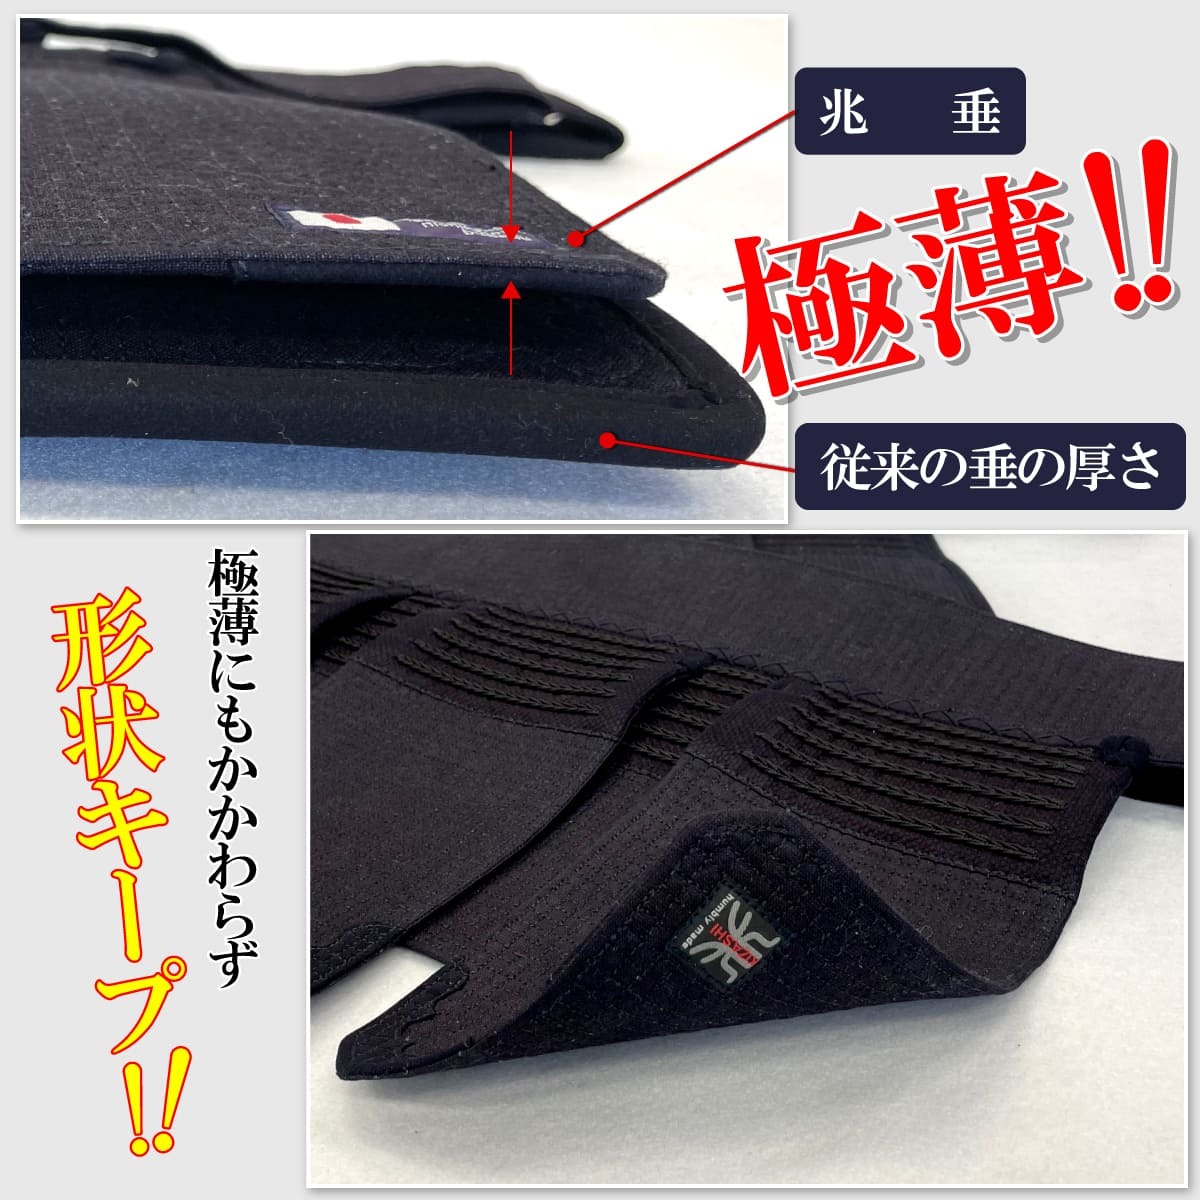 剣道 防具 兆 - KIZASHI - 垂のみ きざし 単品 織刺 6mm十字刺 濃紺 